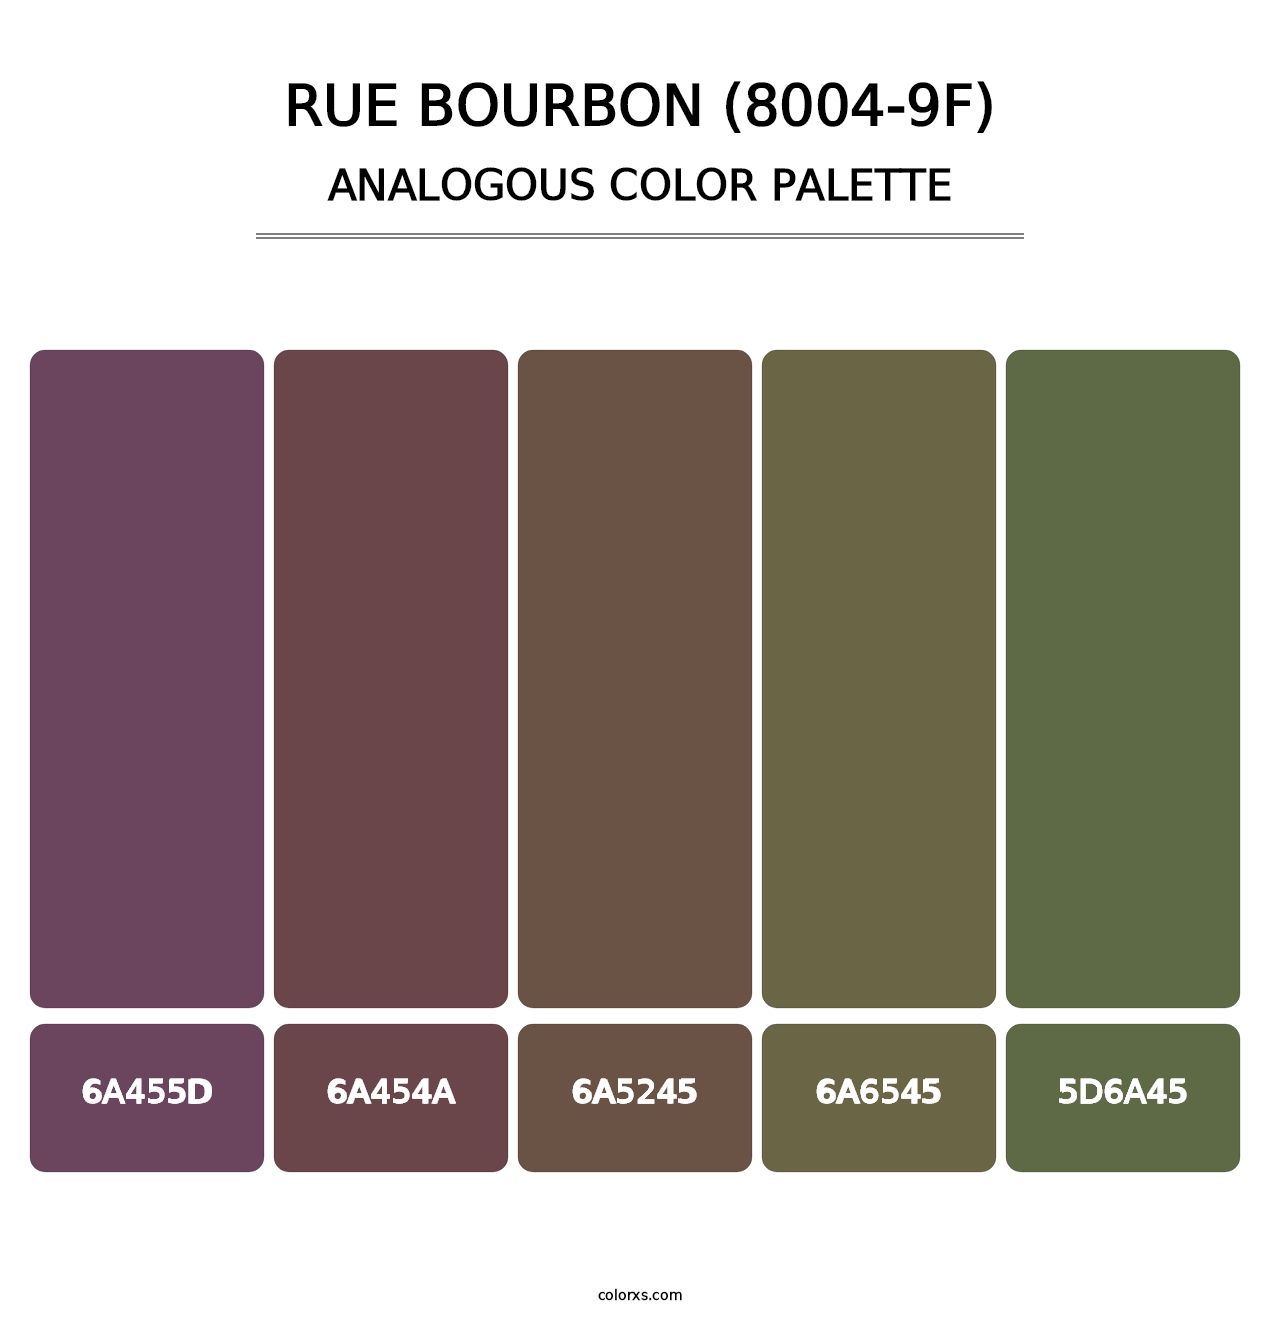 Rue Bourbon (8004-9F) - Analogous Color Palette